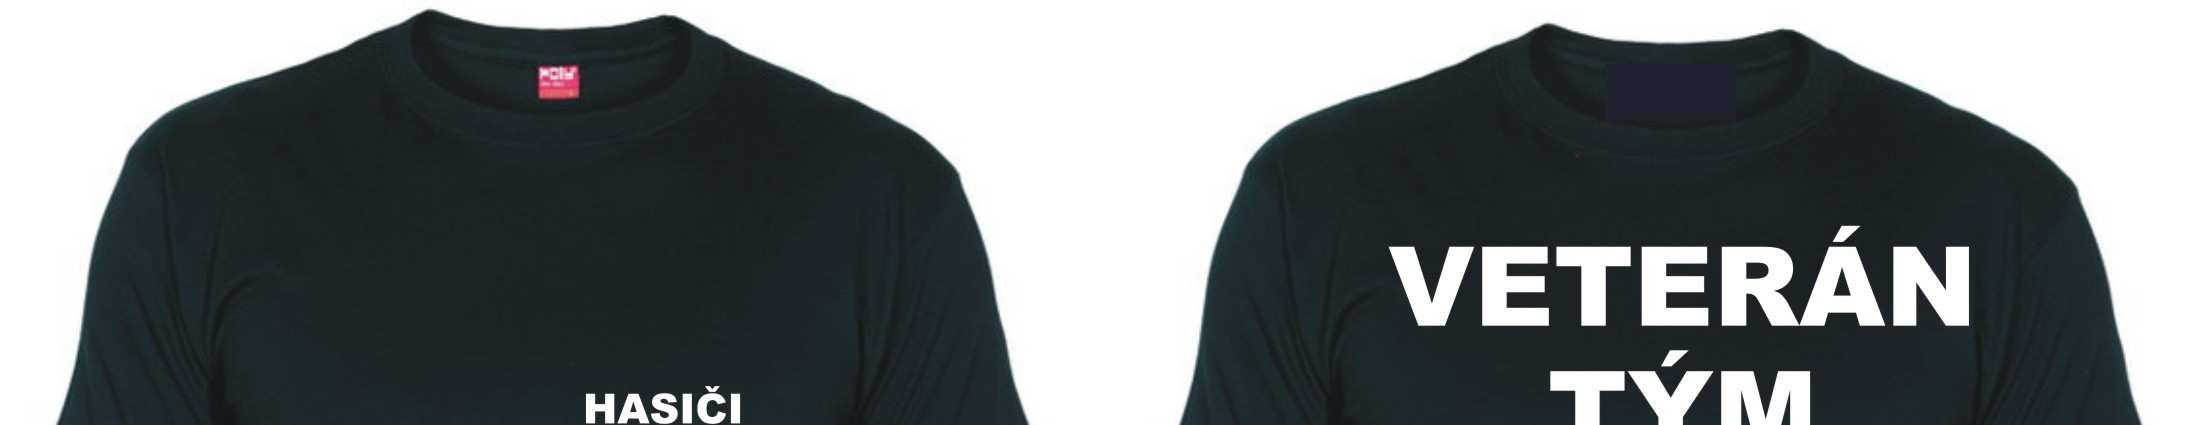 Družstvo seniorů - 10 ks černého trička s nápisem HASIČI ÚNANOV na hrudi a nápisem VETERÁN TÝM na zádech (viz. obrázek 3) - jako sportovní úbor senioři využívají zásahové obleky JPO Obr.